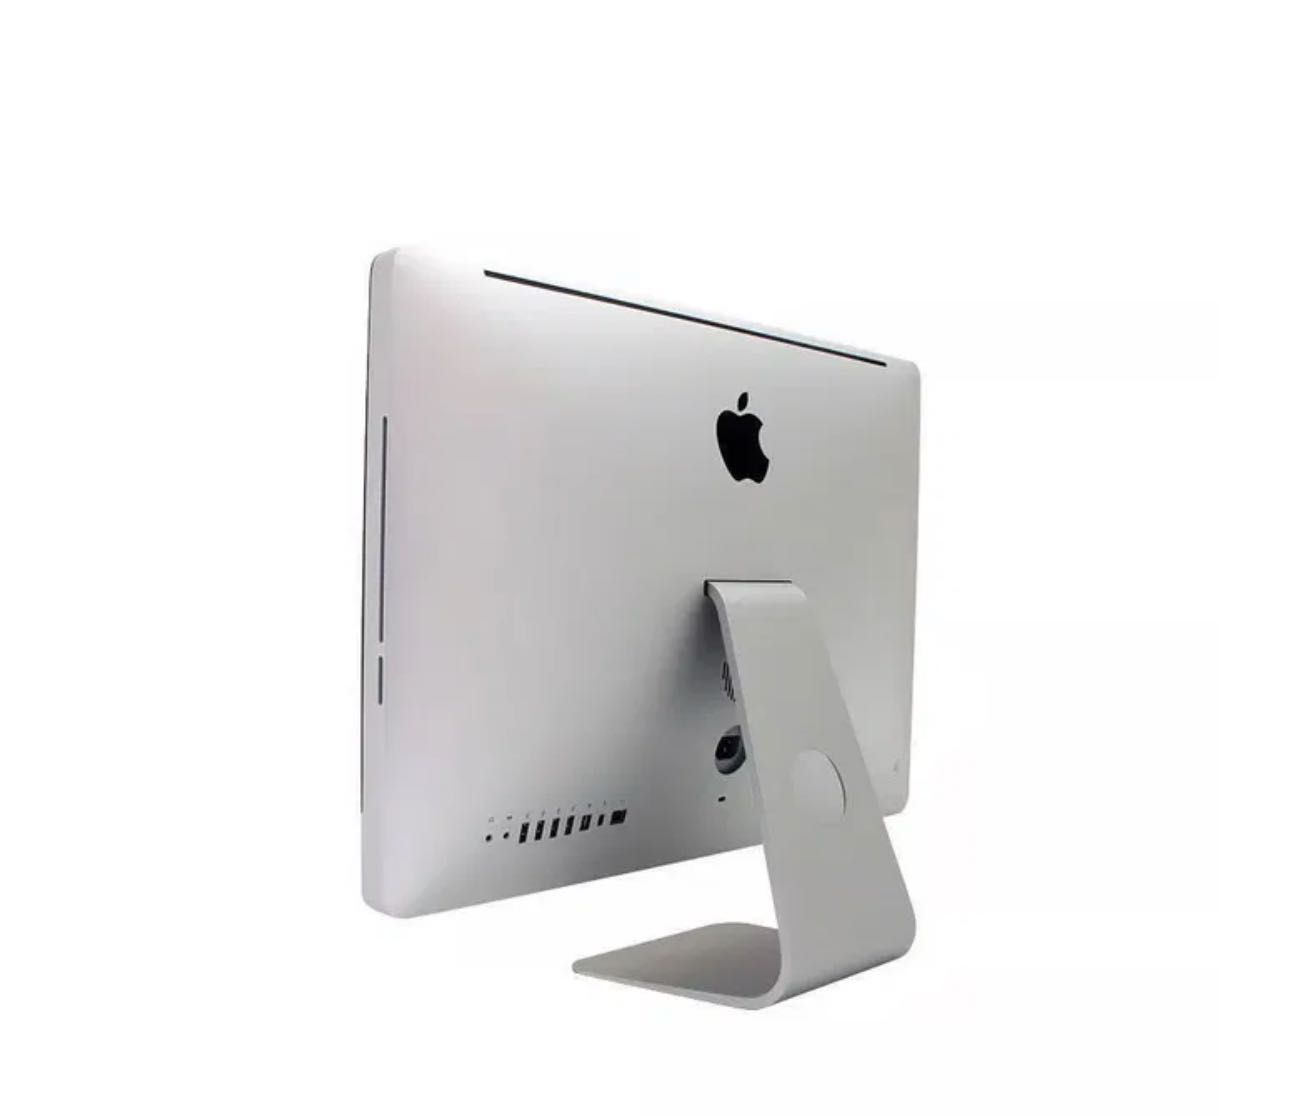 iMac 21,5-inch (Final 2013) Core i5 2,9GHz 512GB (revisto)